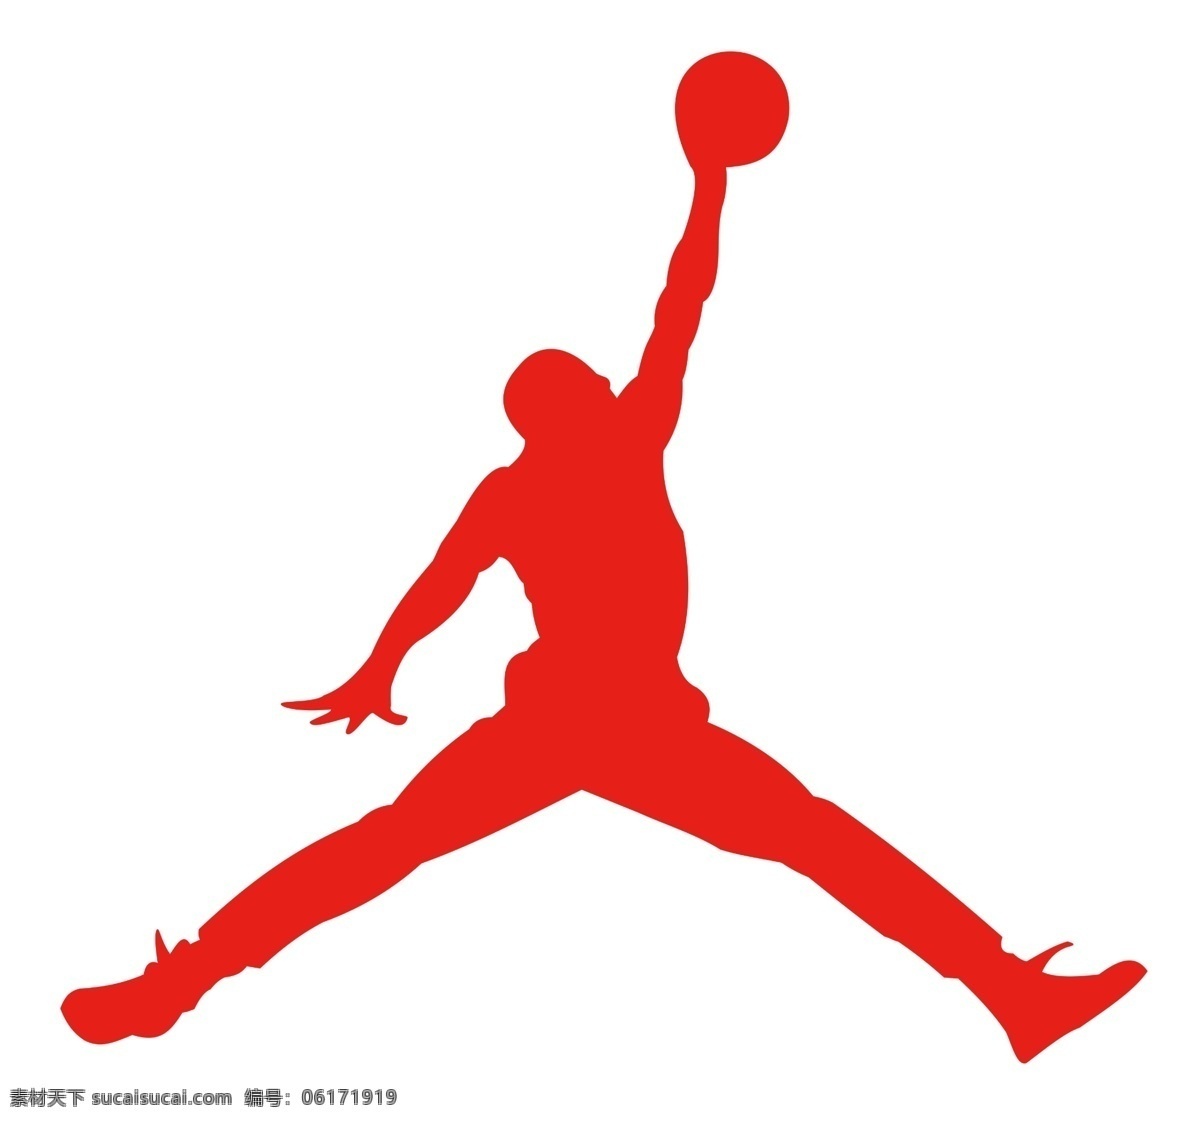 乔丹扣篮图 雕刻镂空 篮球之神 亚克力字 红色 白色 展板模板